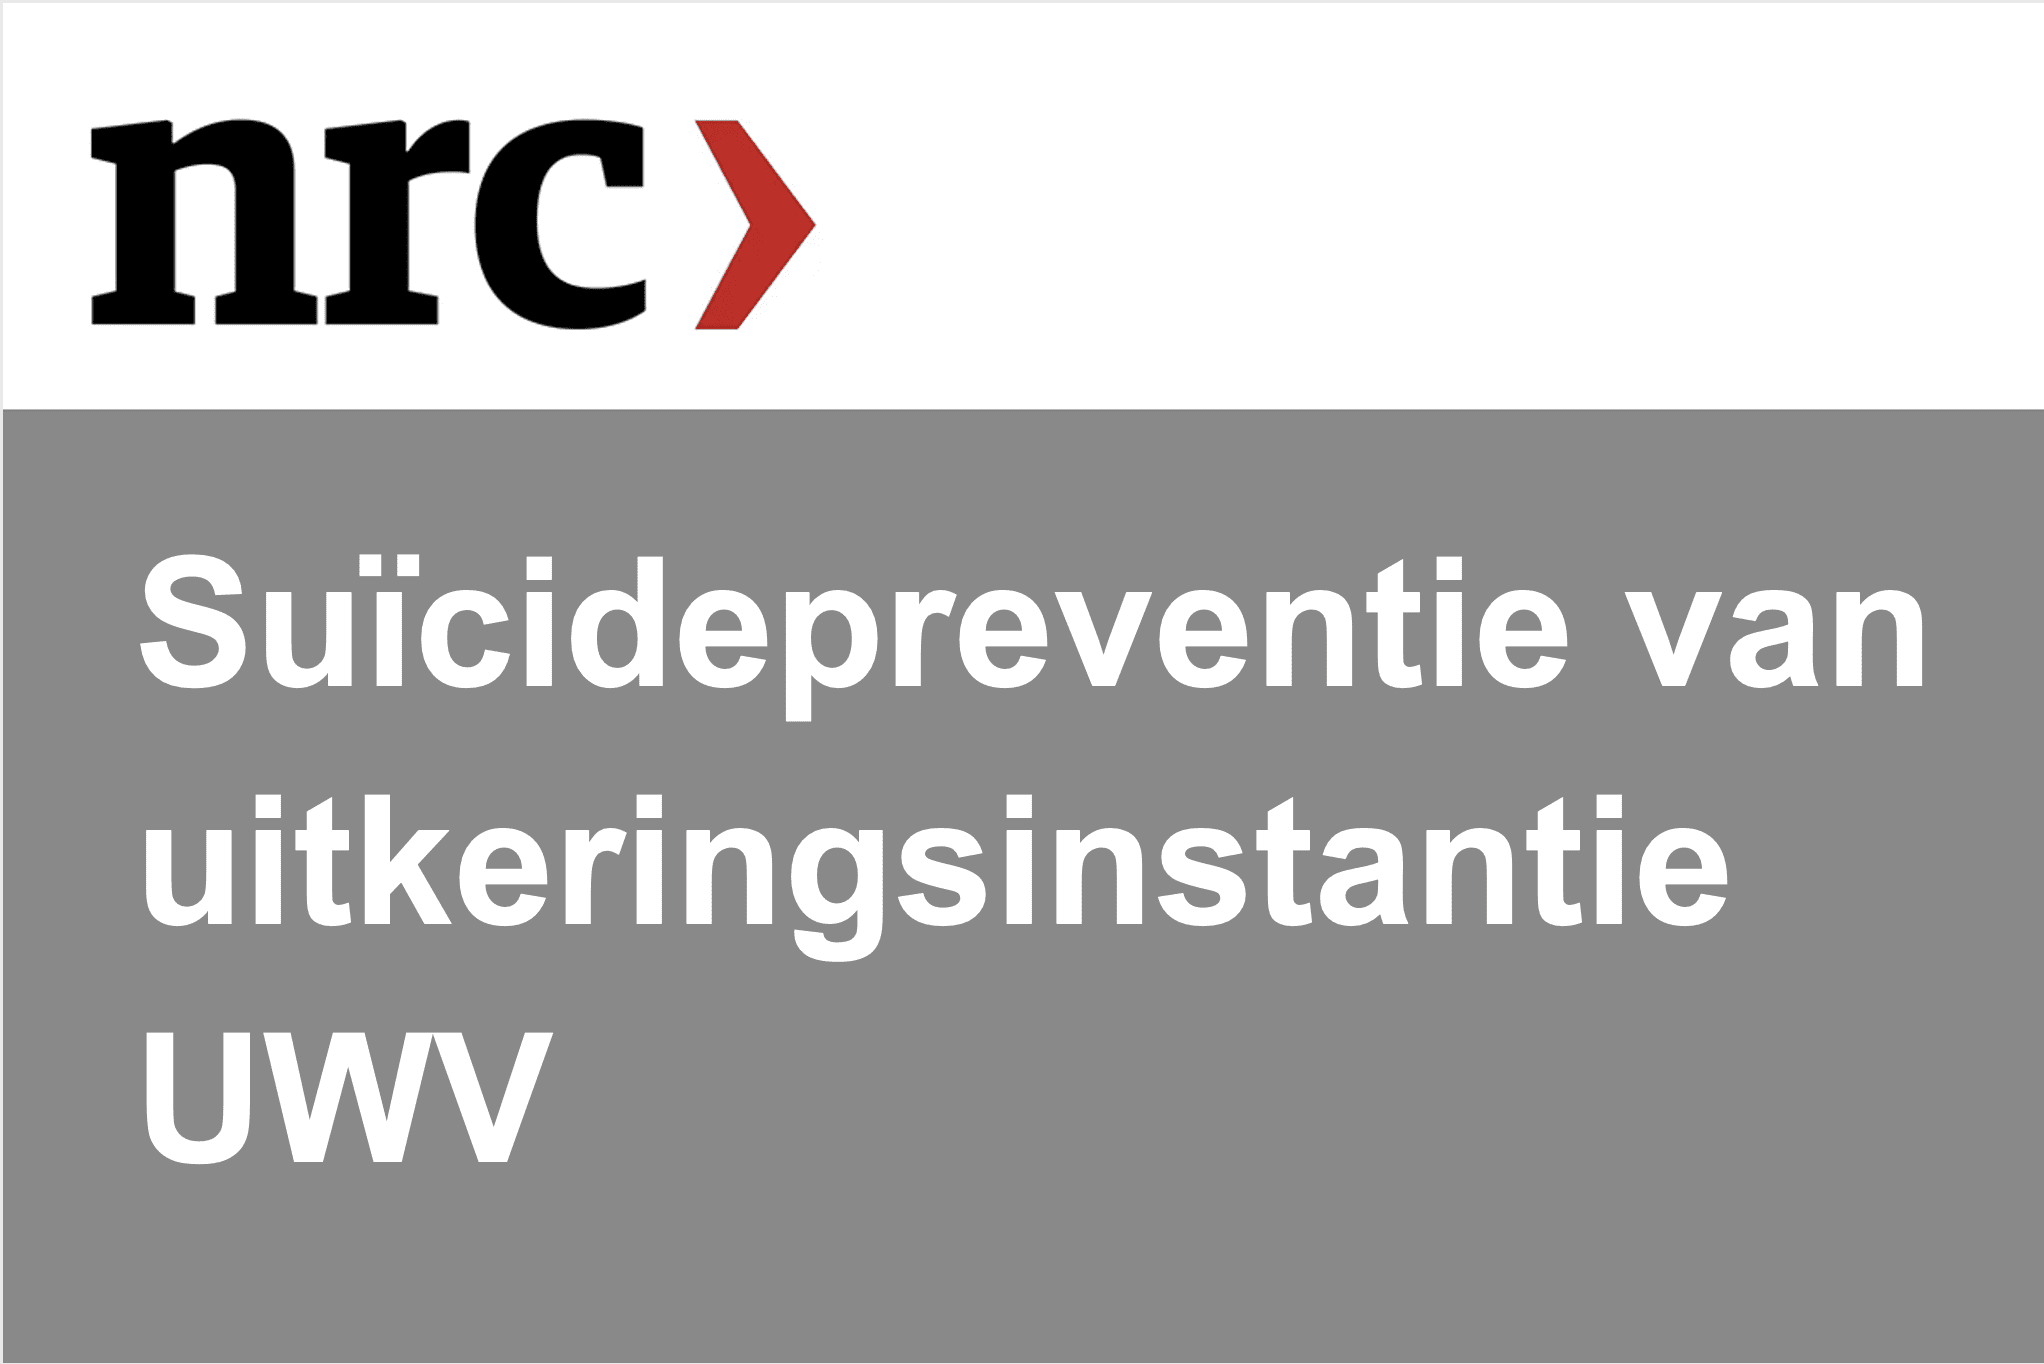 In NRC aandacht voor suïcidepreventie van uitkeringsinstantie UWV